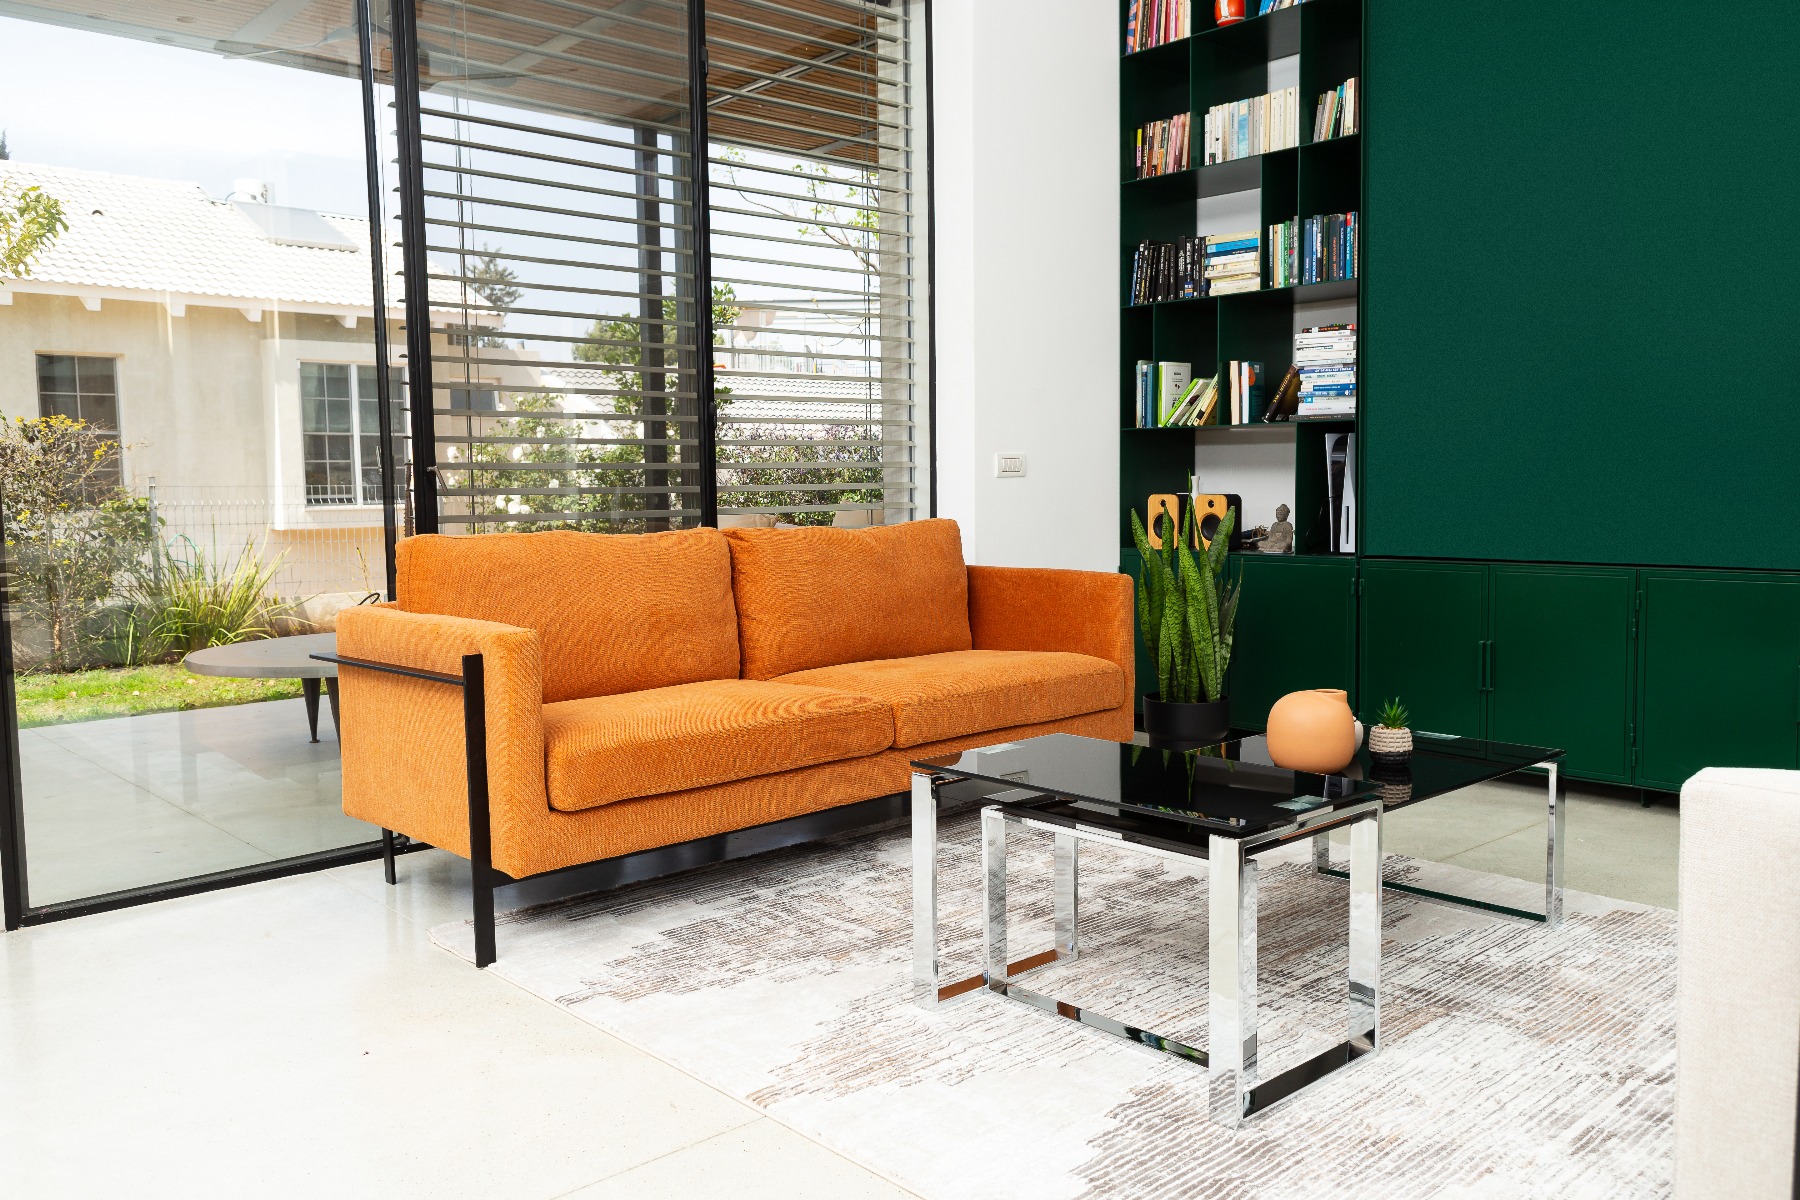 ספה תלת מושבית מדגם דסטיני בצבע כתום עם שולחן מעוצב מזכוכית שחורה מדגם